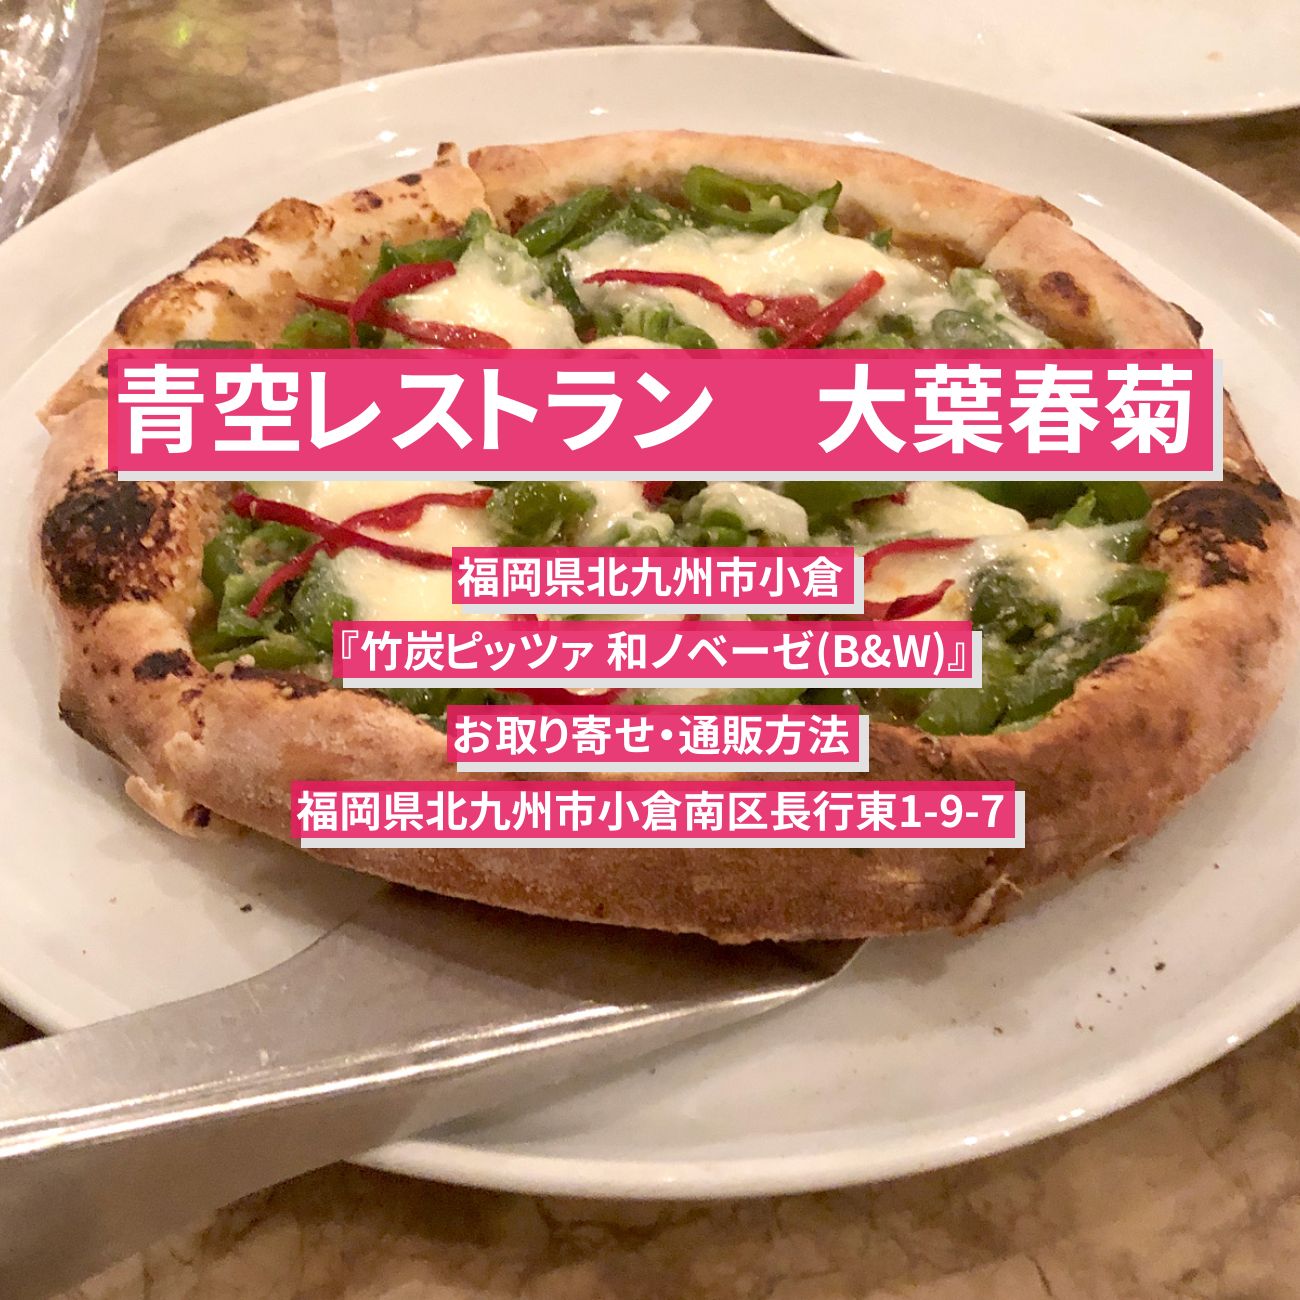 【青空レストラン】大葉春菊のピザ『竹炭ピッツァ 和ノベーゼ(B&W)』福岡のお取り寄せ・通販方法